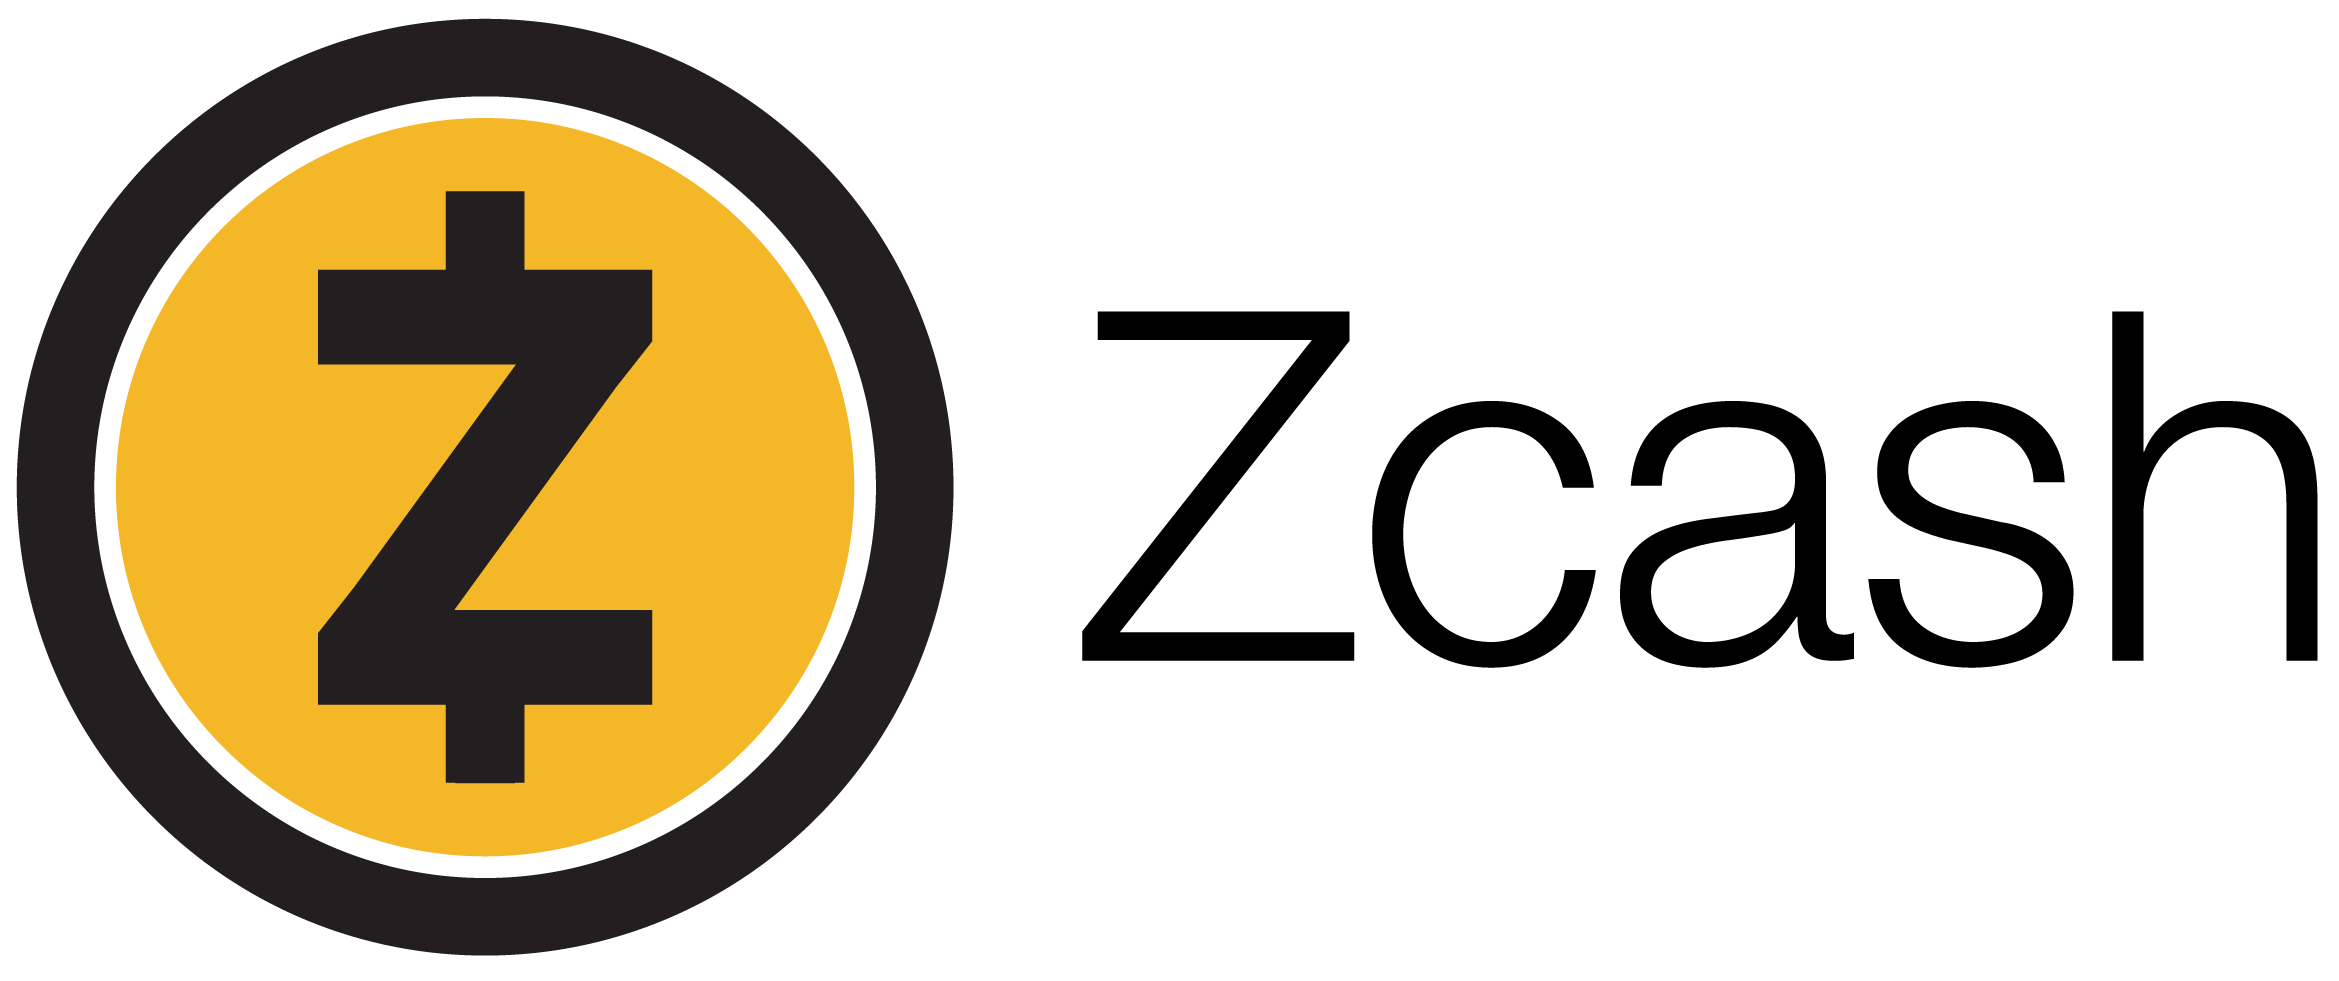 Zcash Logo - Zcash Media Kit - Zcash